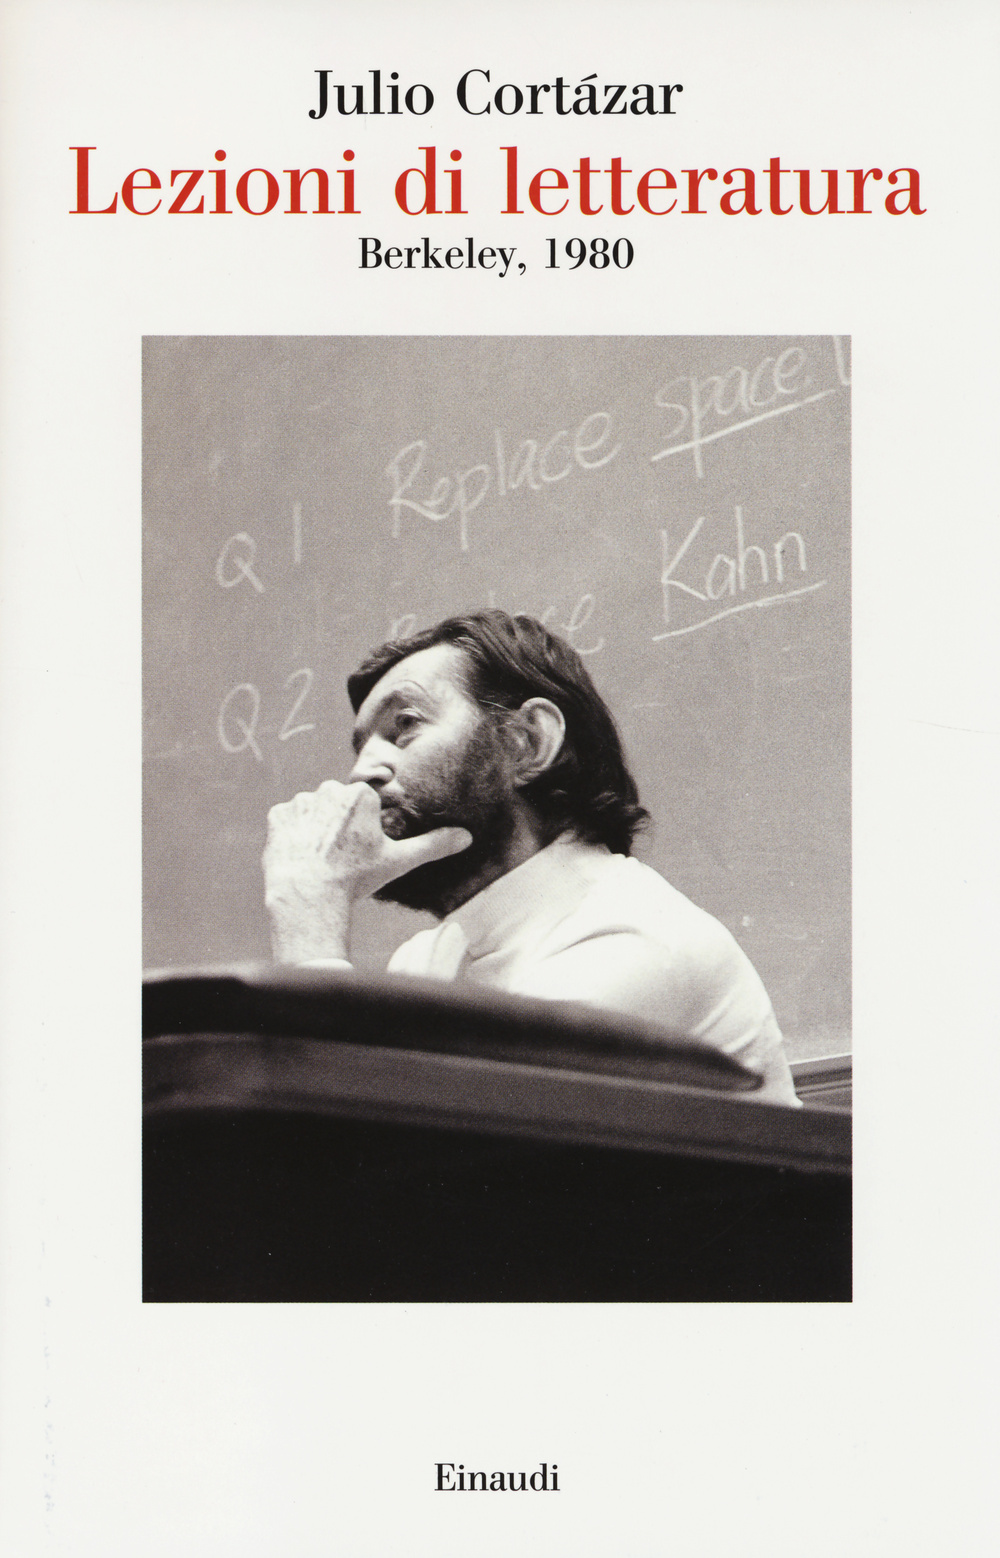 Lezioni di letteratura, Berkley 1980